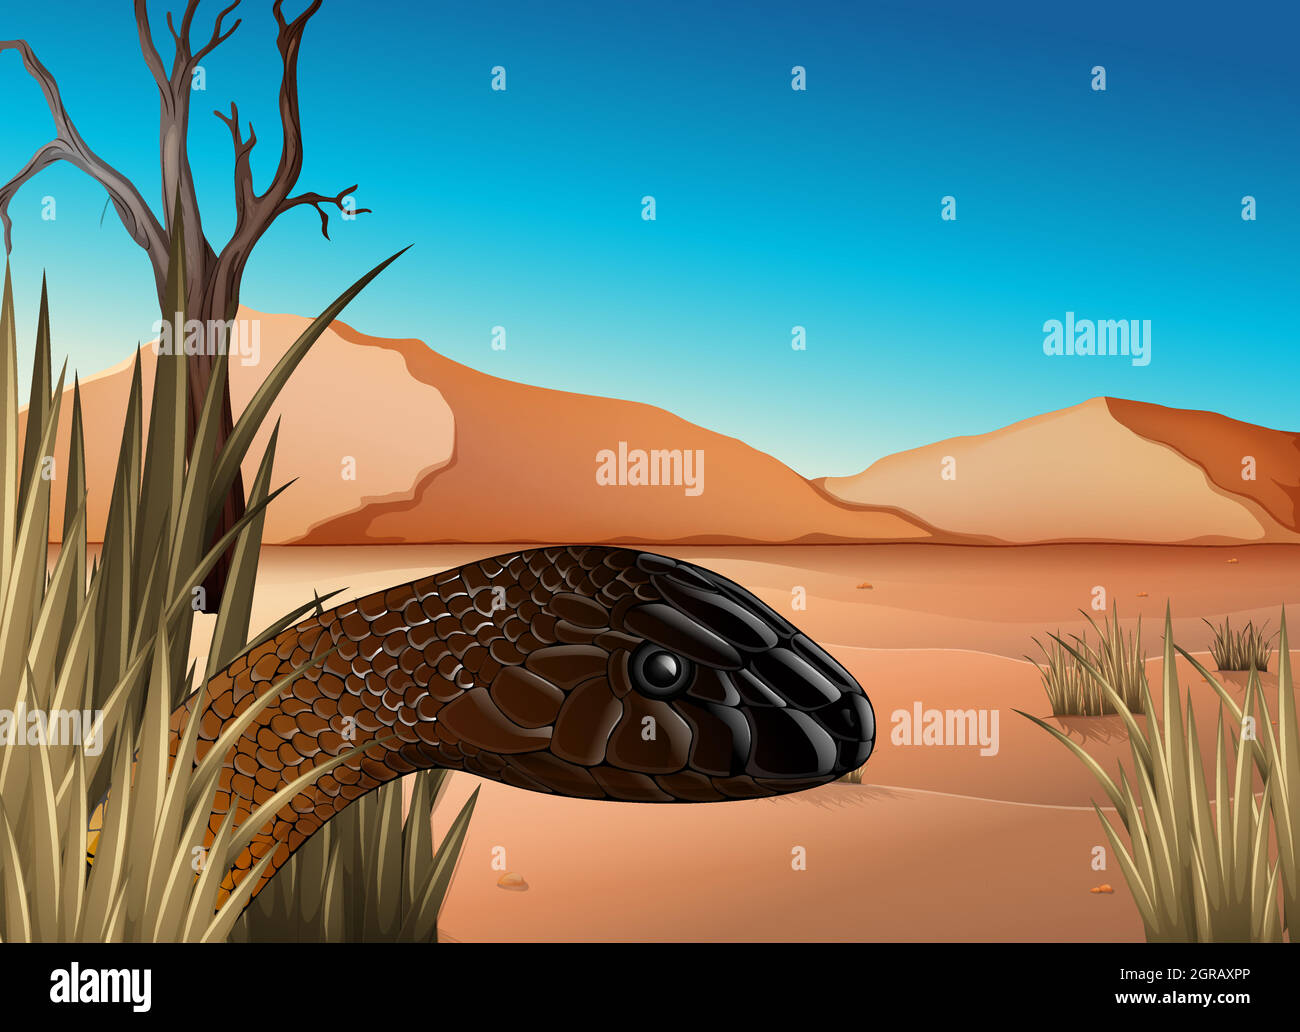 Ein Reptil in der Wüste Stock Vektor